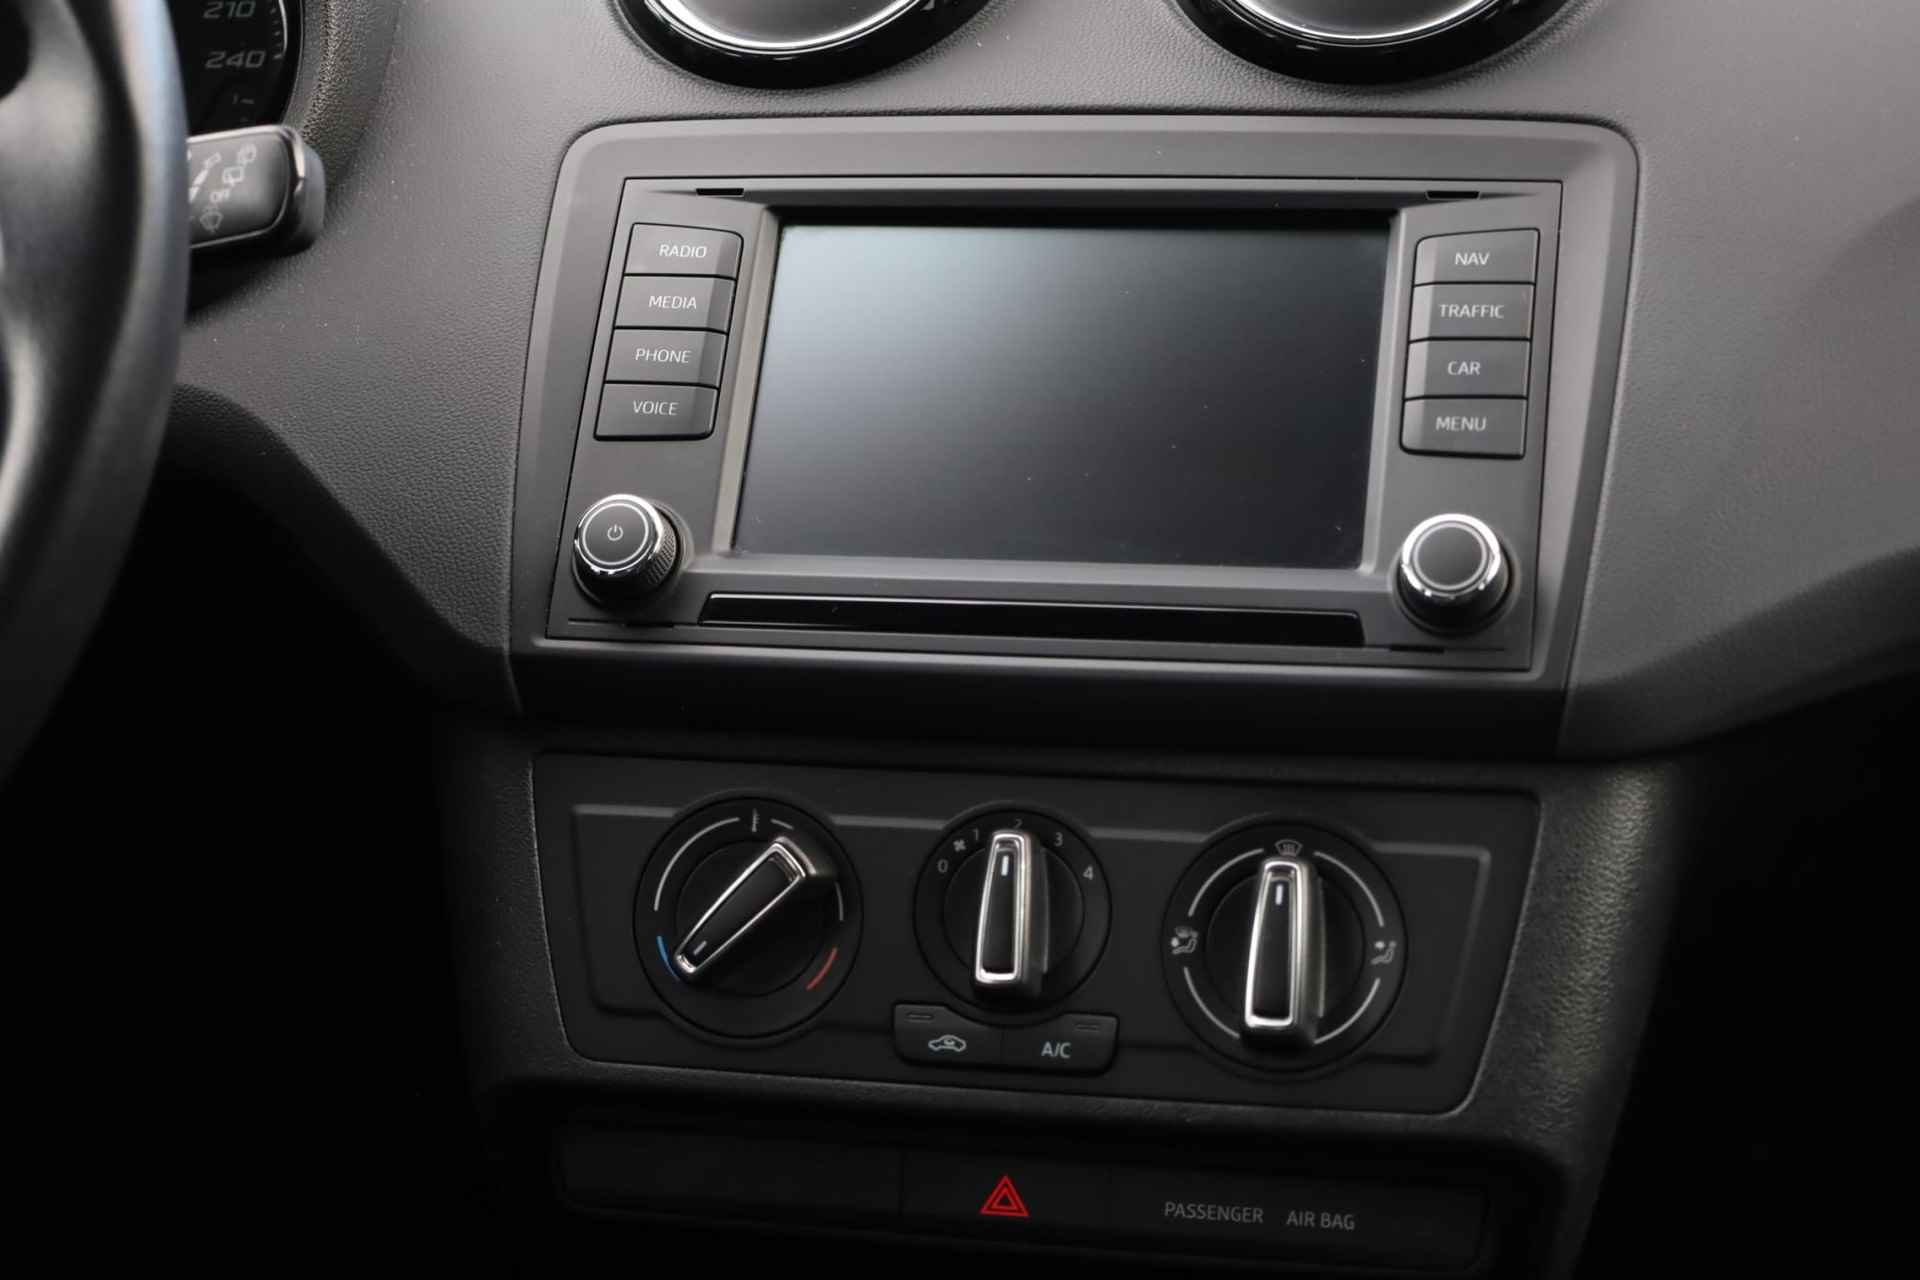 SEAT Ibiza 1.0 EcoTSI Style Connect 95PK / 70kW, 16" LMV zwart, navigatie, cruise control, parkeersensoren, multifunctioneel lederen stuurwiel, licht sensor, zwarte spiegelkappen + zwarte accenten, spiegels elektrisch inklapbaar - 31/38